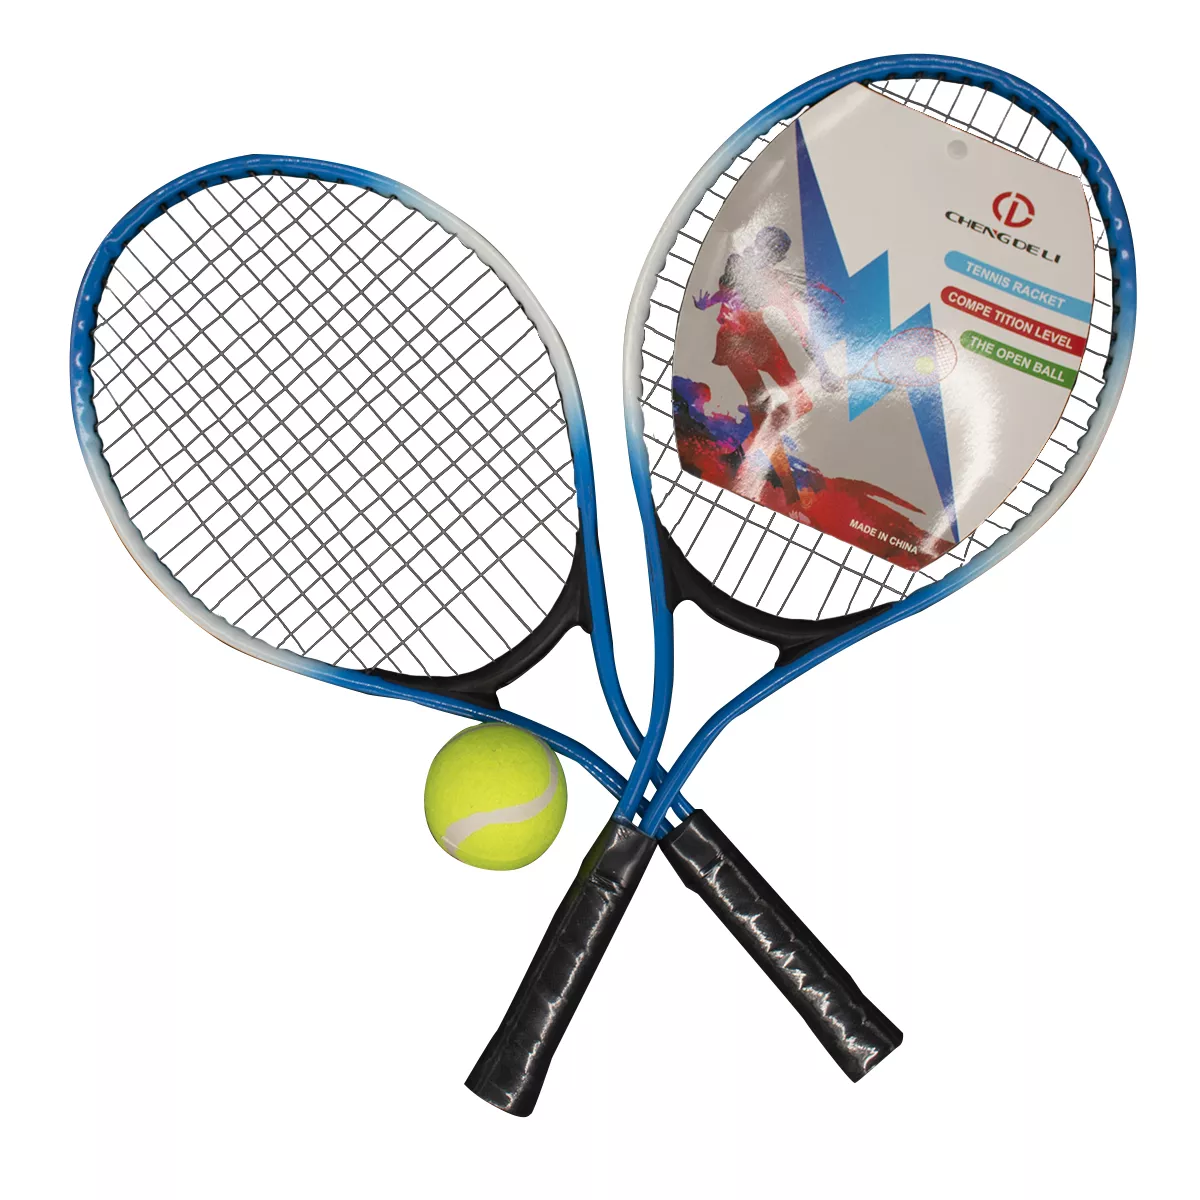 Productos - Raquetas de Tenis